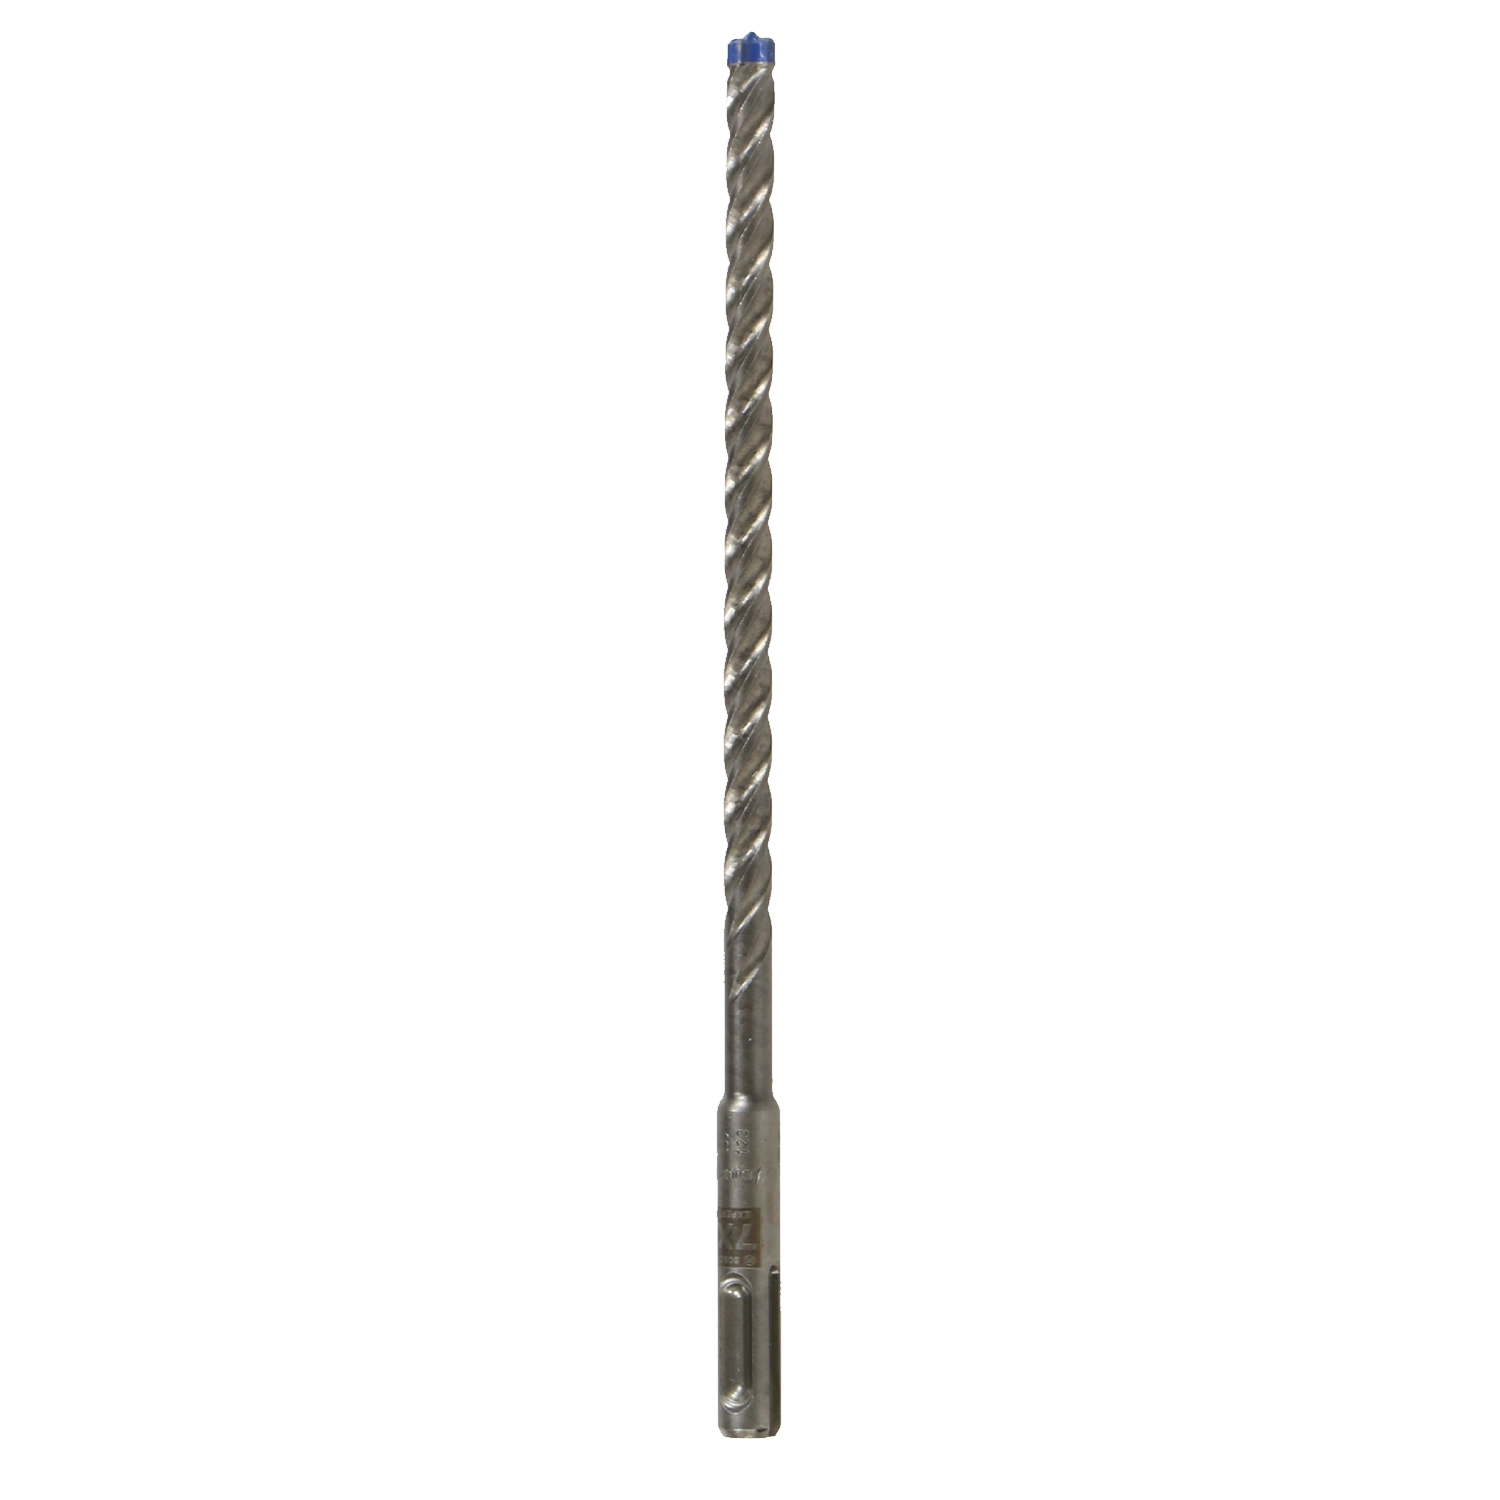 FACOM hamerboor SDS-Plus- Expert Plus-7X: Zilverkleurige hamerboor met zwarte spiraal en SDS-Plus-aansluiting. "Expert Plus-7X" en afmetingen op de boor.